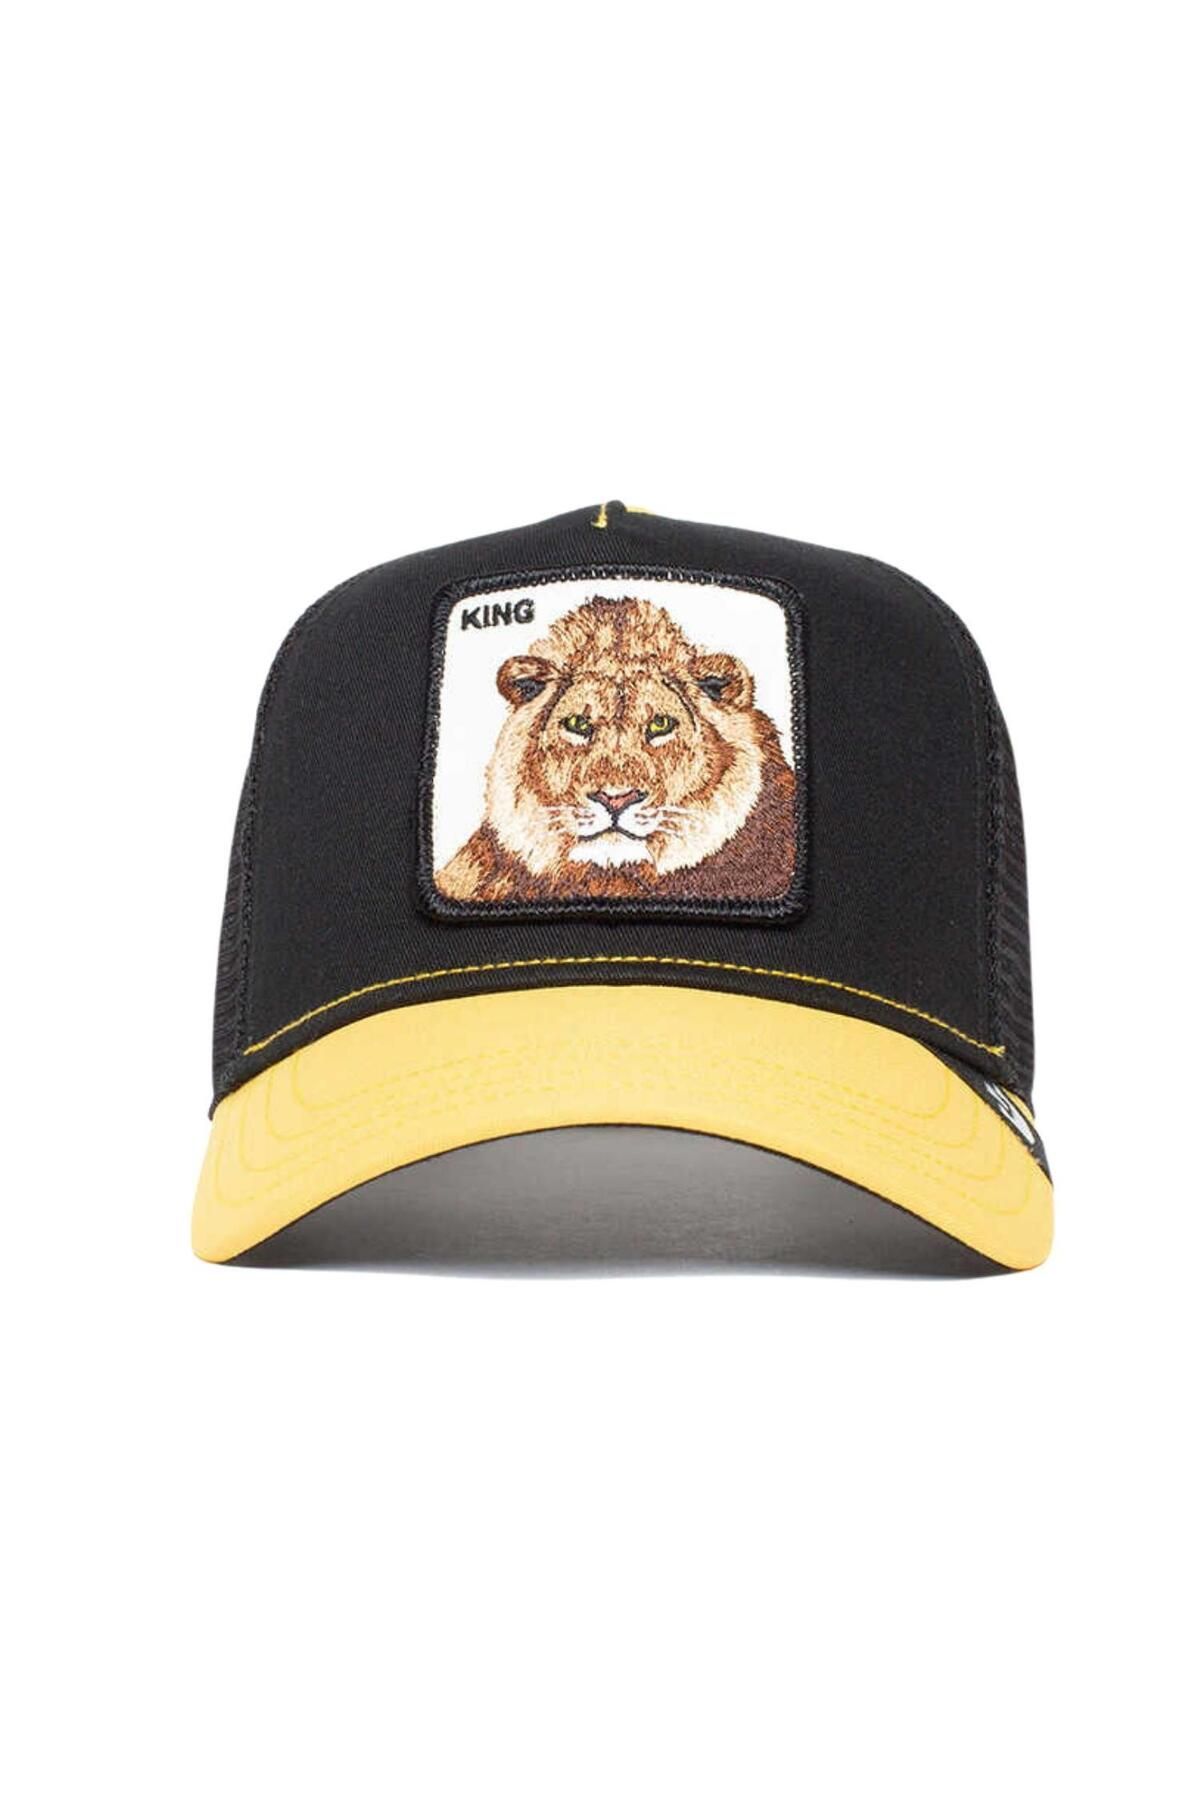 Goorin Bros The King Lion (ASLAN FİGÜRLÜ) Şapka